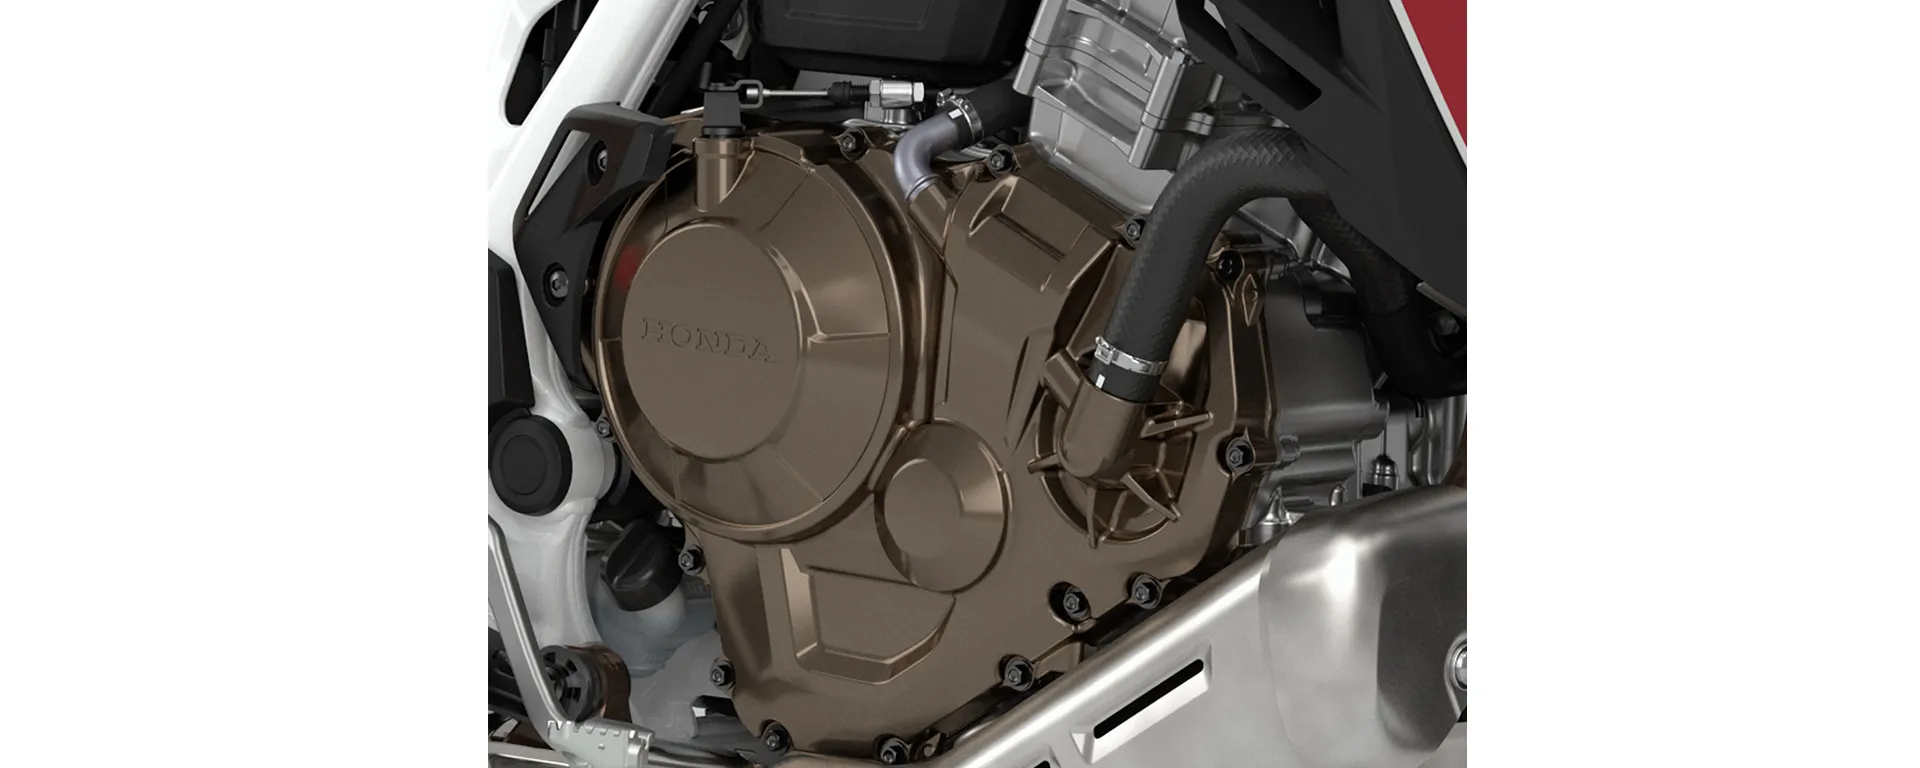 Transmissão Manual ou DCT da Moto Honda CRF 1100L Africa Twin